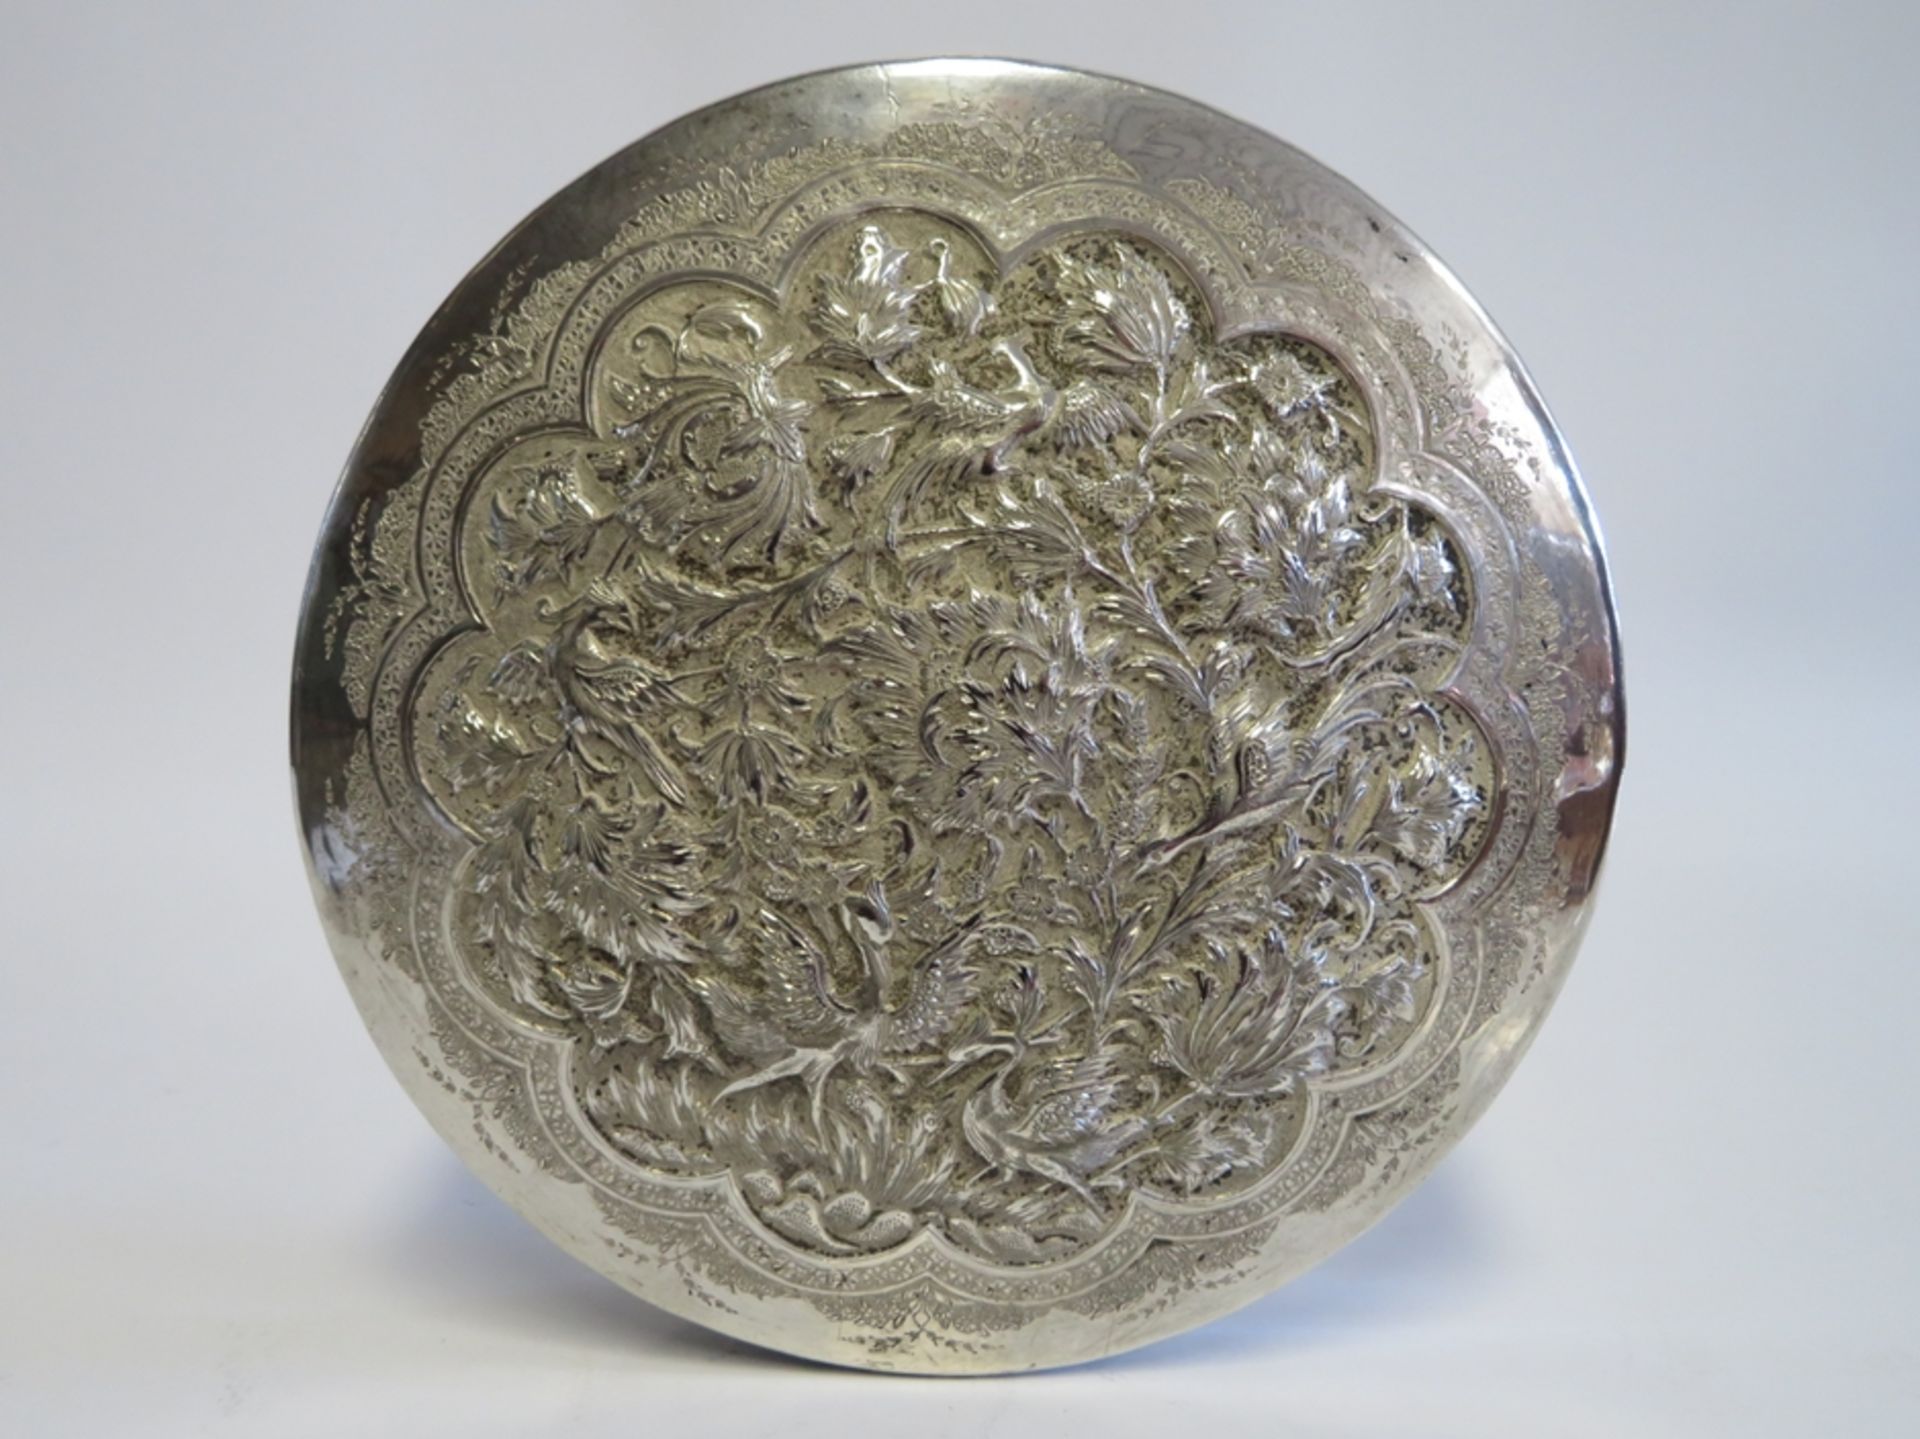 Deckeldose, wohl Persien, feine Blütengravur, 800er Silber, gepunzt, 433 g, h 5 cm, d 16,5 cm. - Image 2 of 2